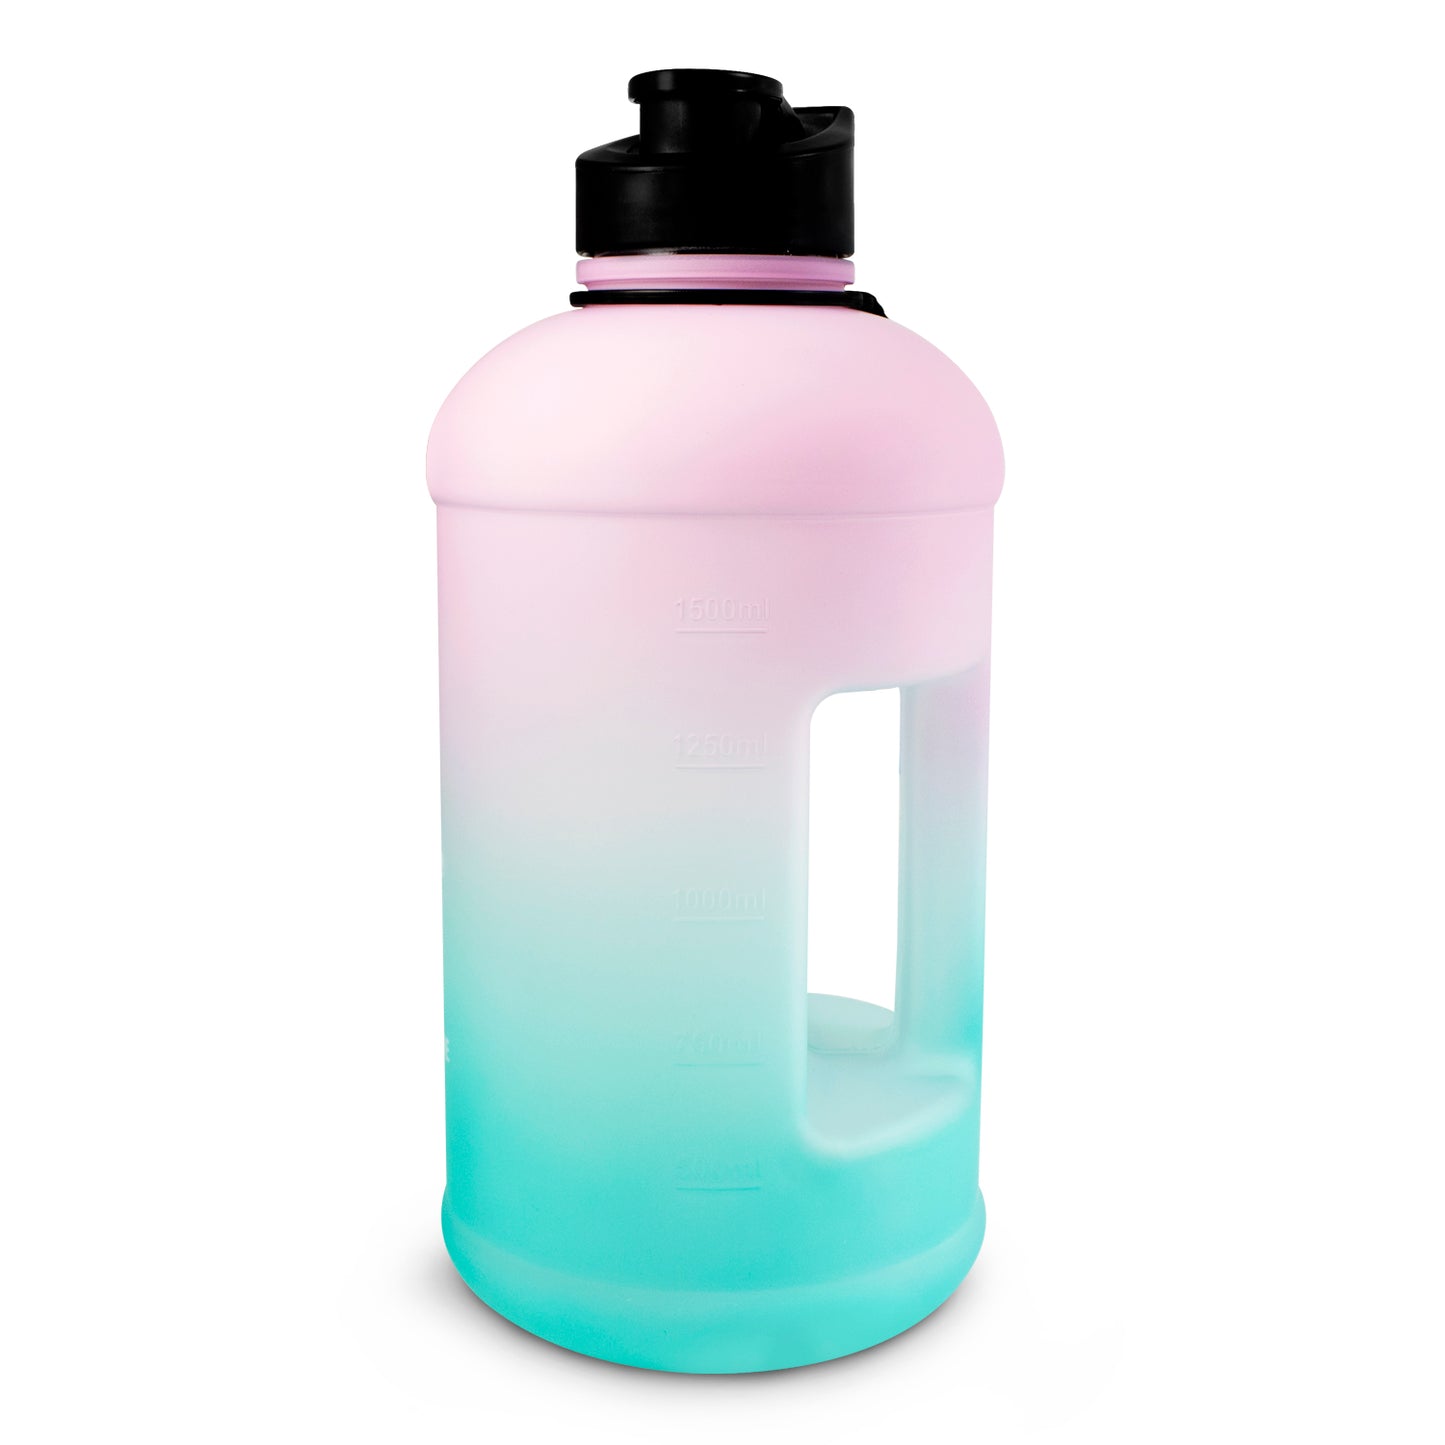 Botella Motivacional 2.2 litros tipo garrafon rosa/verde